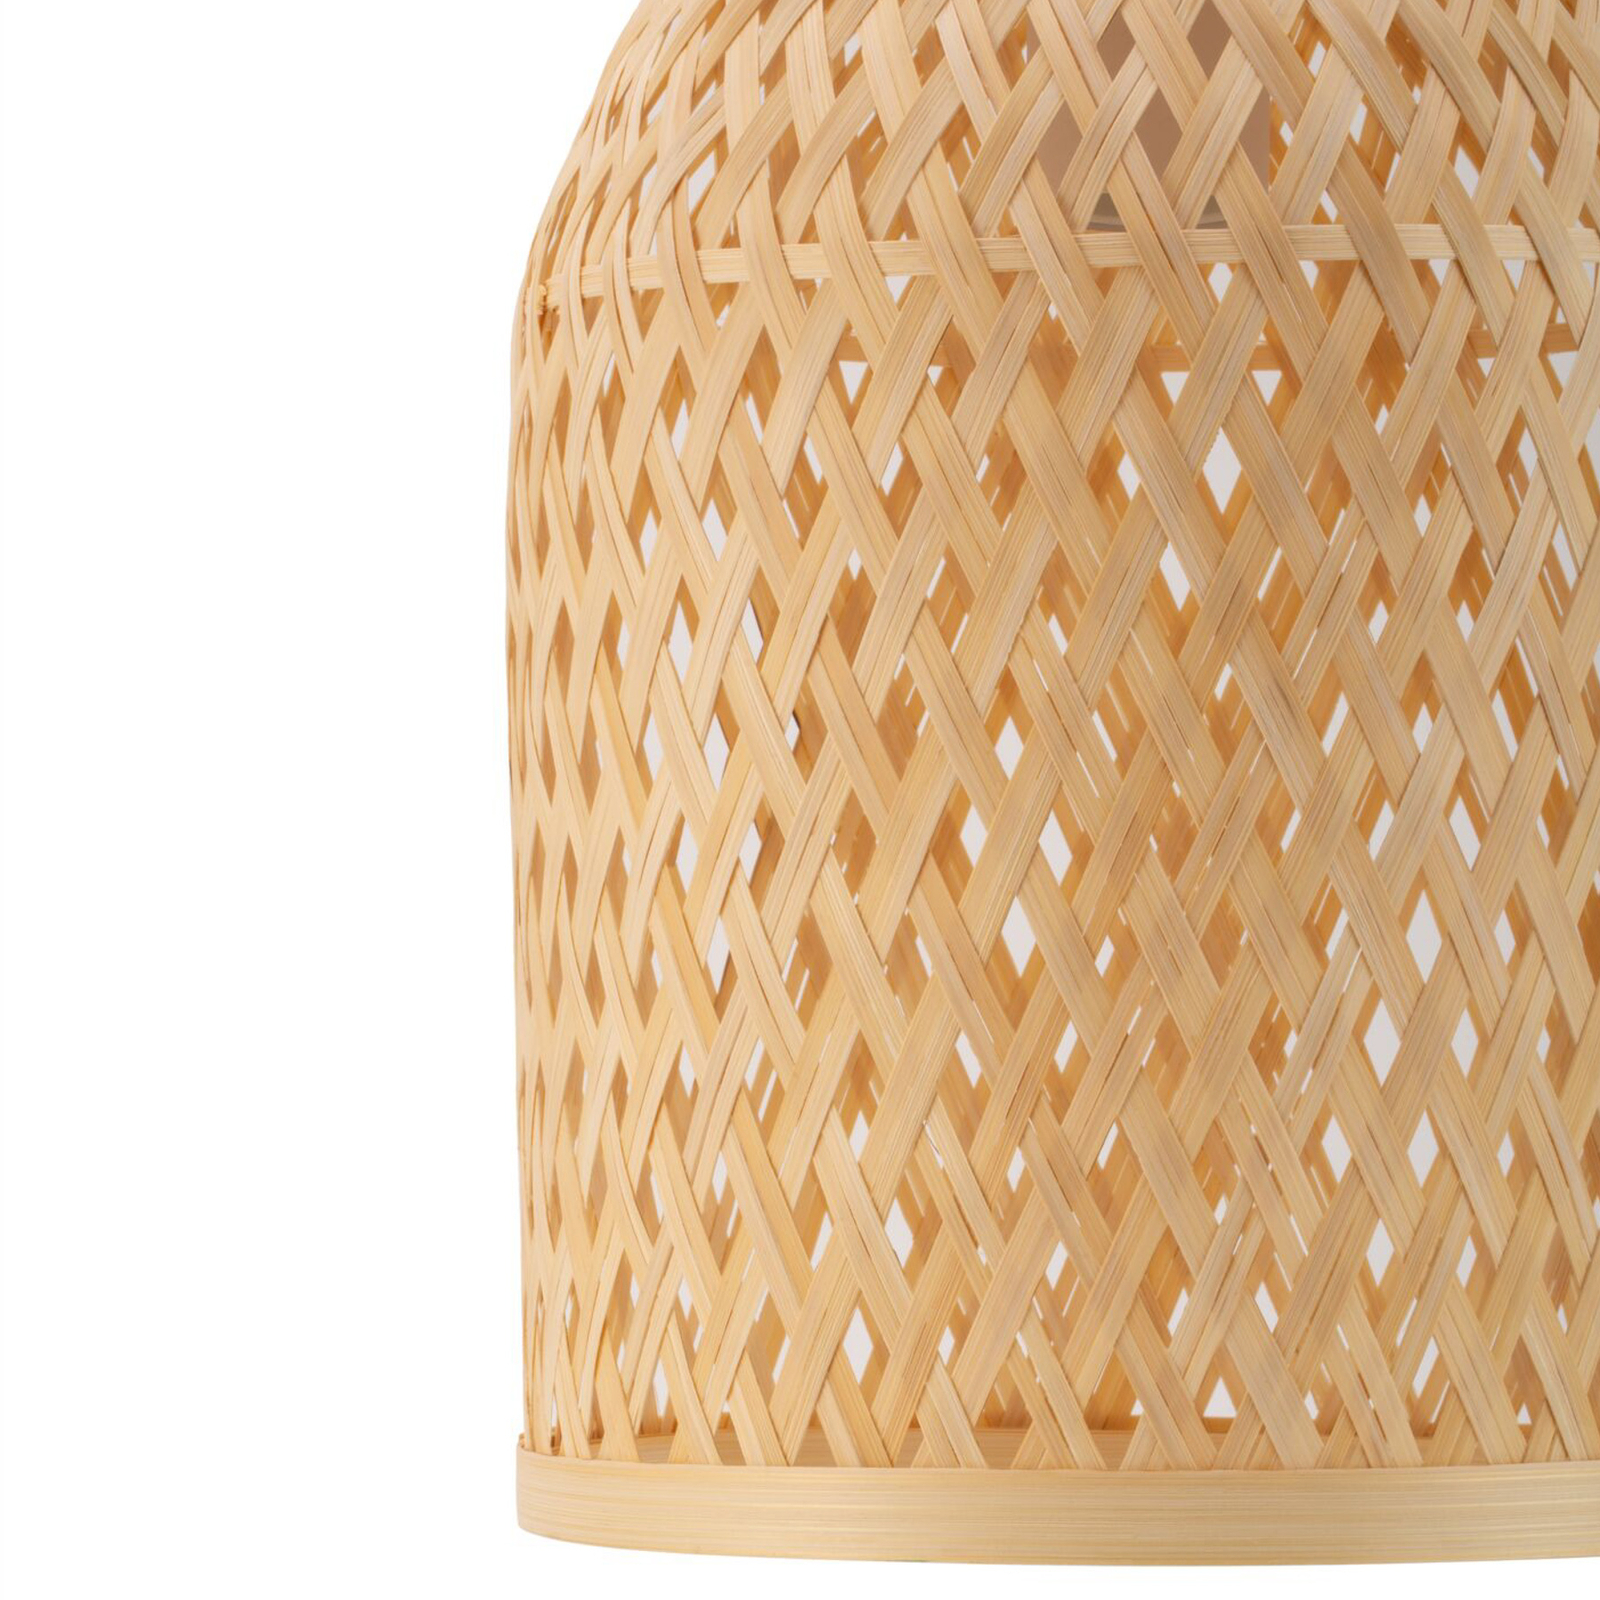 Pauleen Woody Romance hanglamp van bamboe